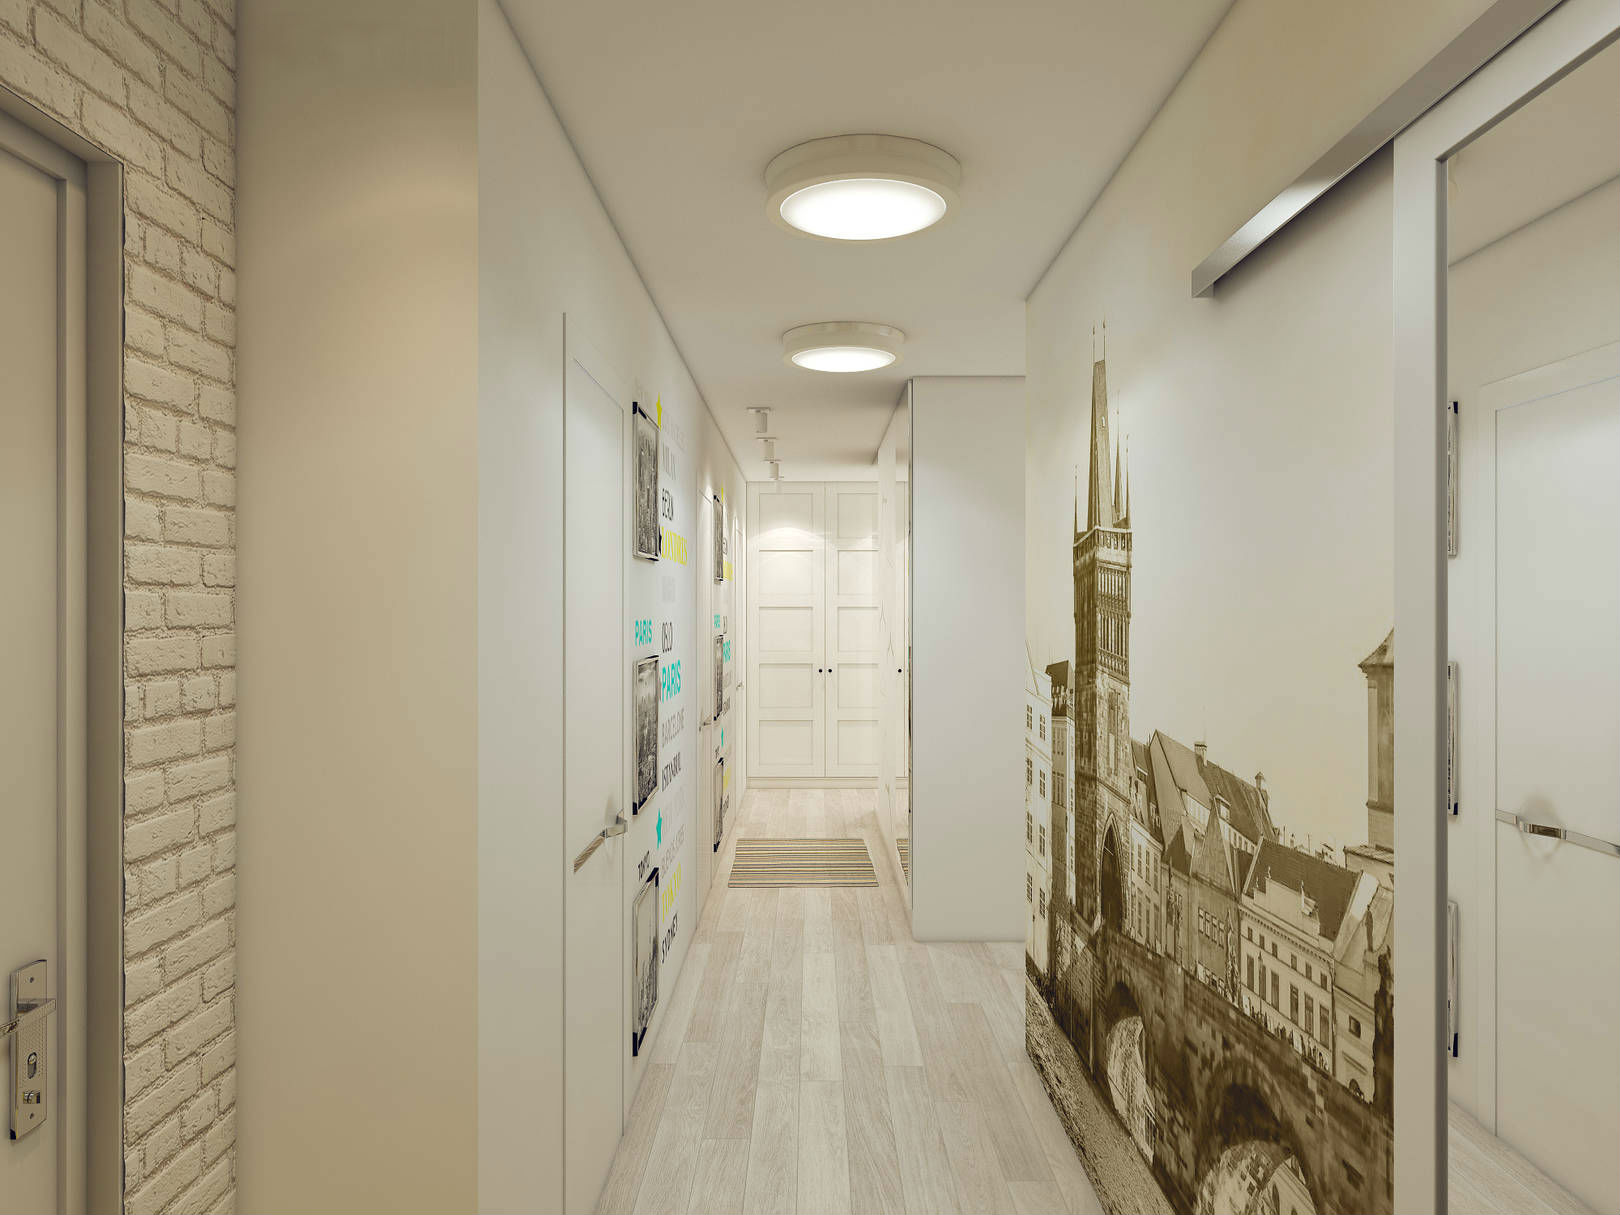 Дизайн коридора г образной формы